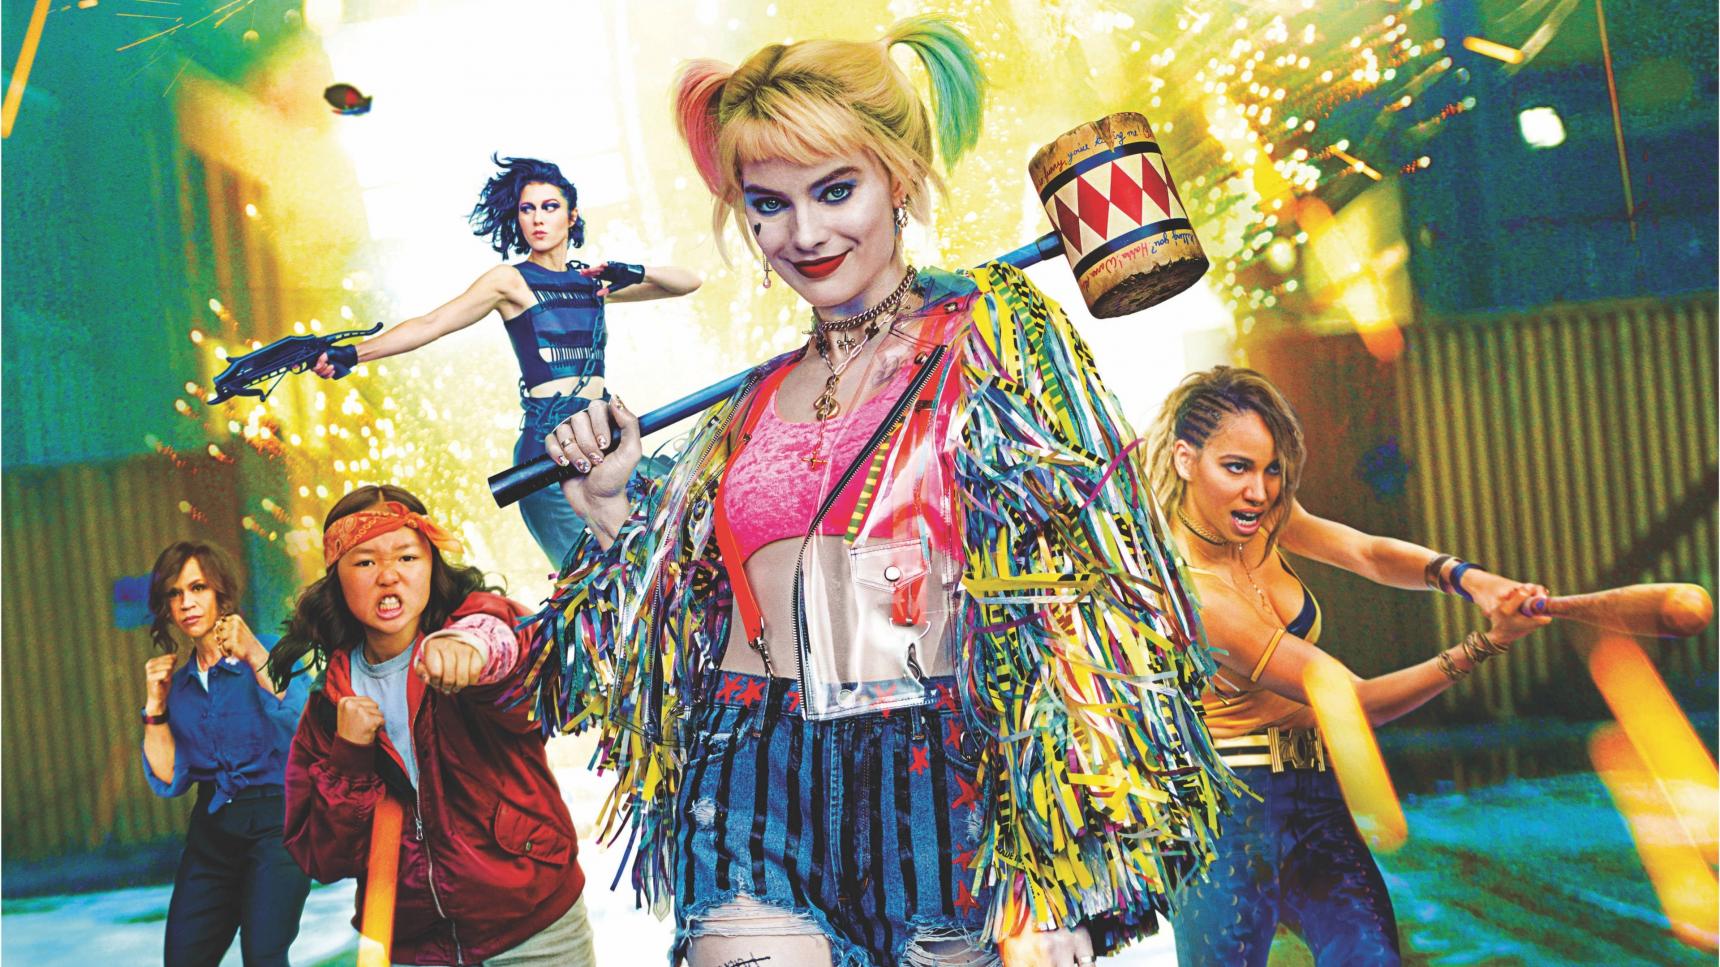 Fondo de pantalla de la película Aves de presa (y la fantabulosa emancipación de Harley Quinn) en CUEVANA3 gratis